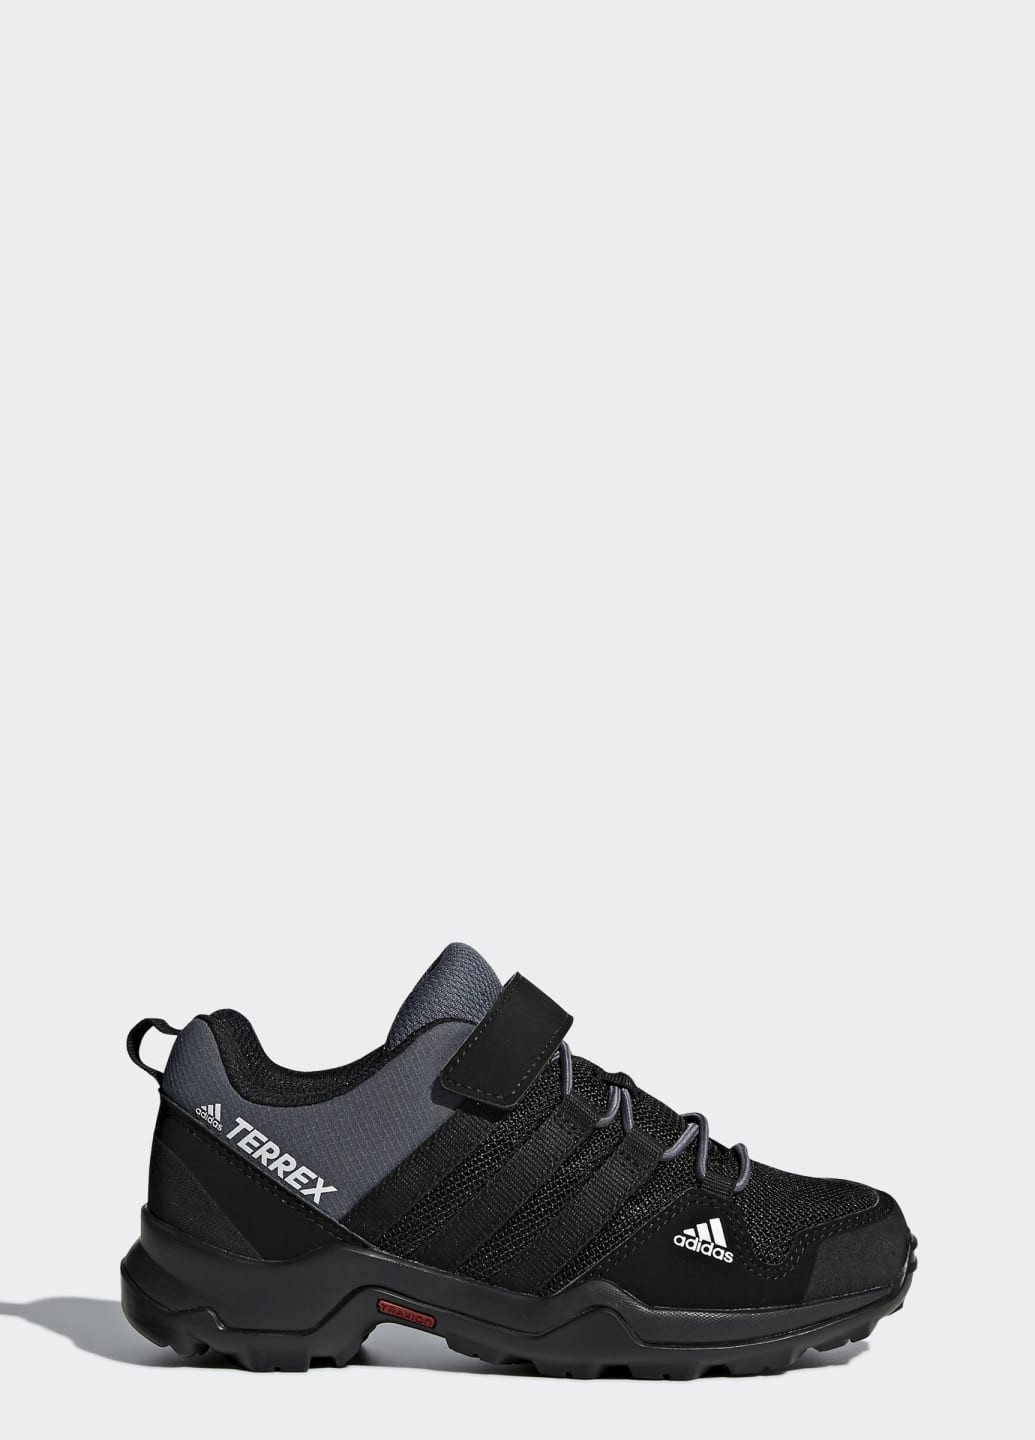 Черные всесезонные обувь для активного отдыха ax2r comfort adidas